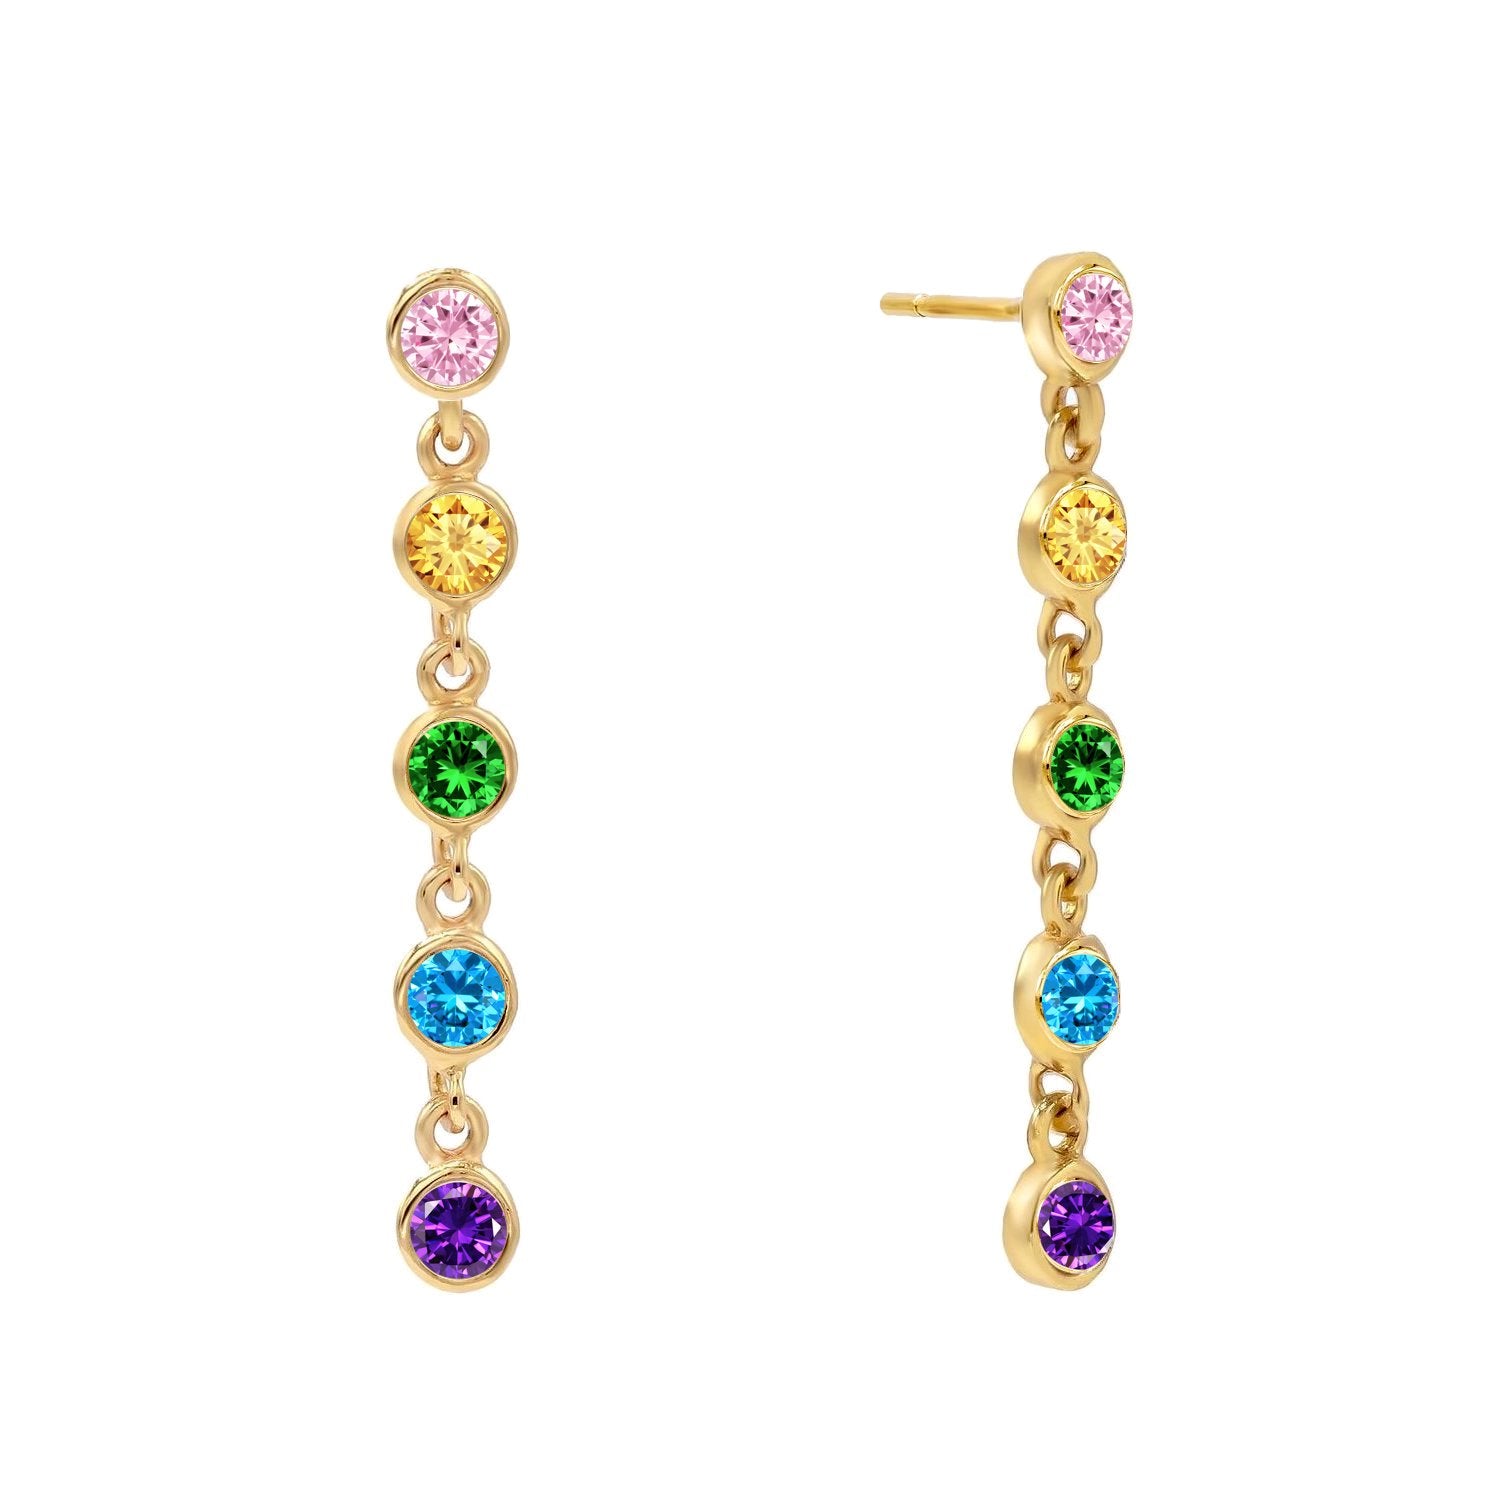 J&CO Jewellery Mini Bezel Stud Earrings Rose Gold